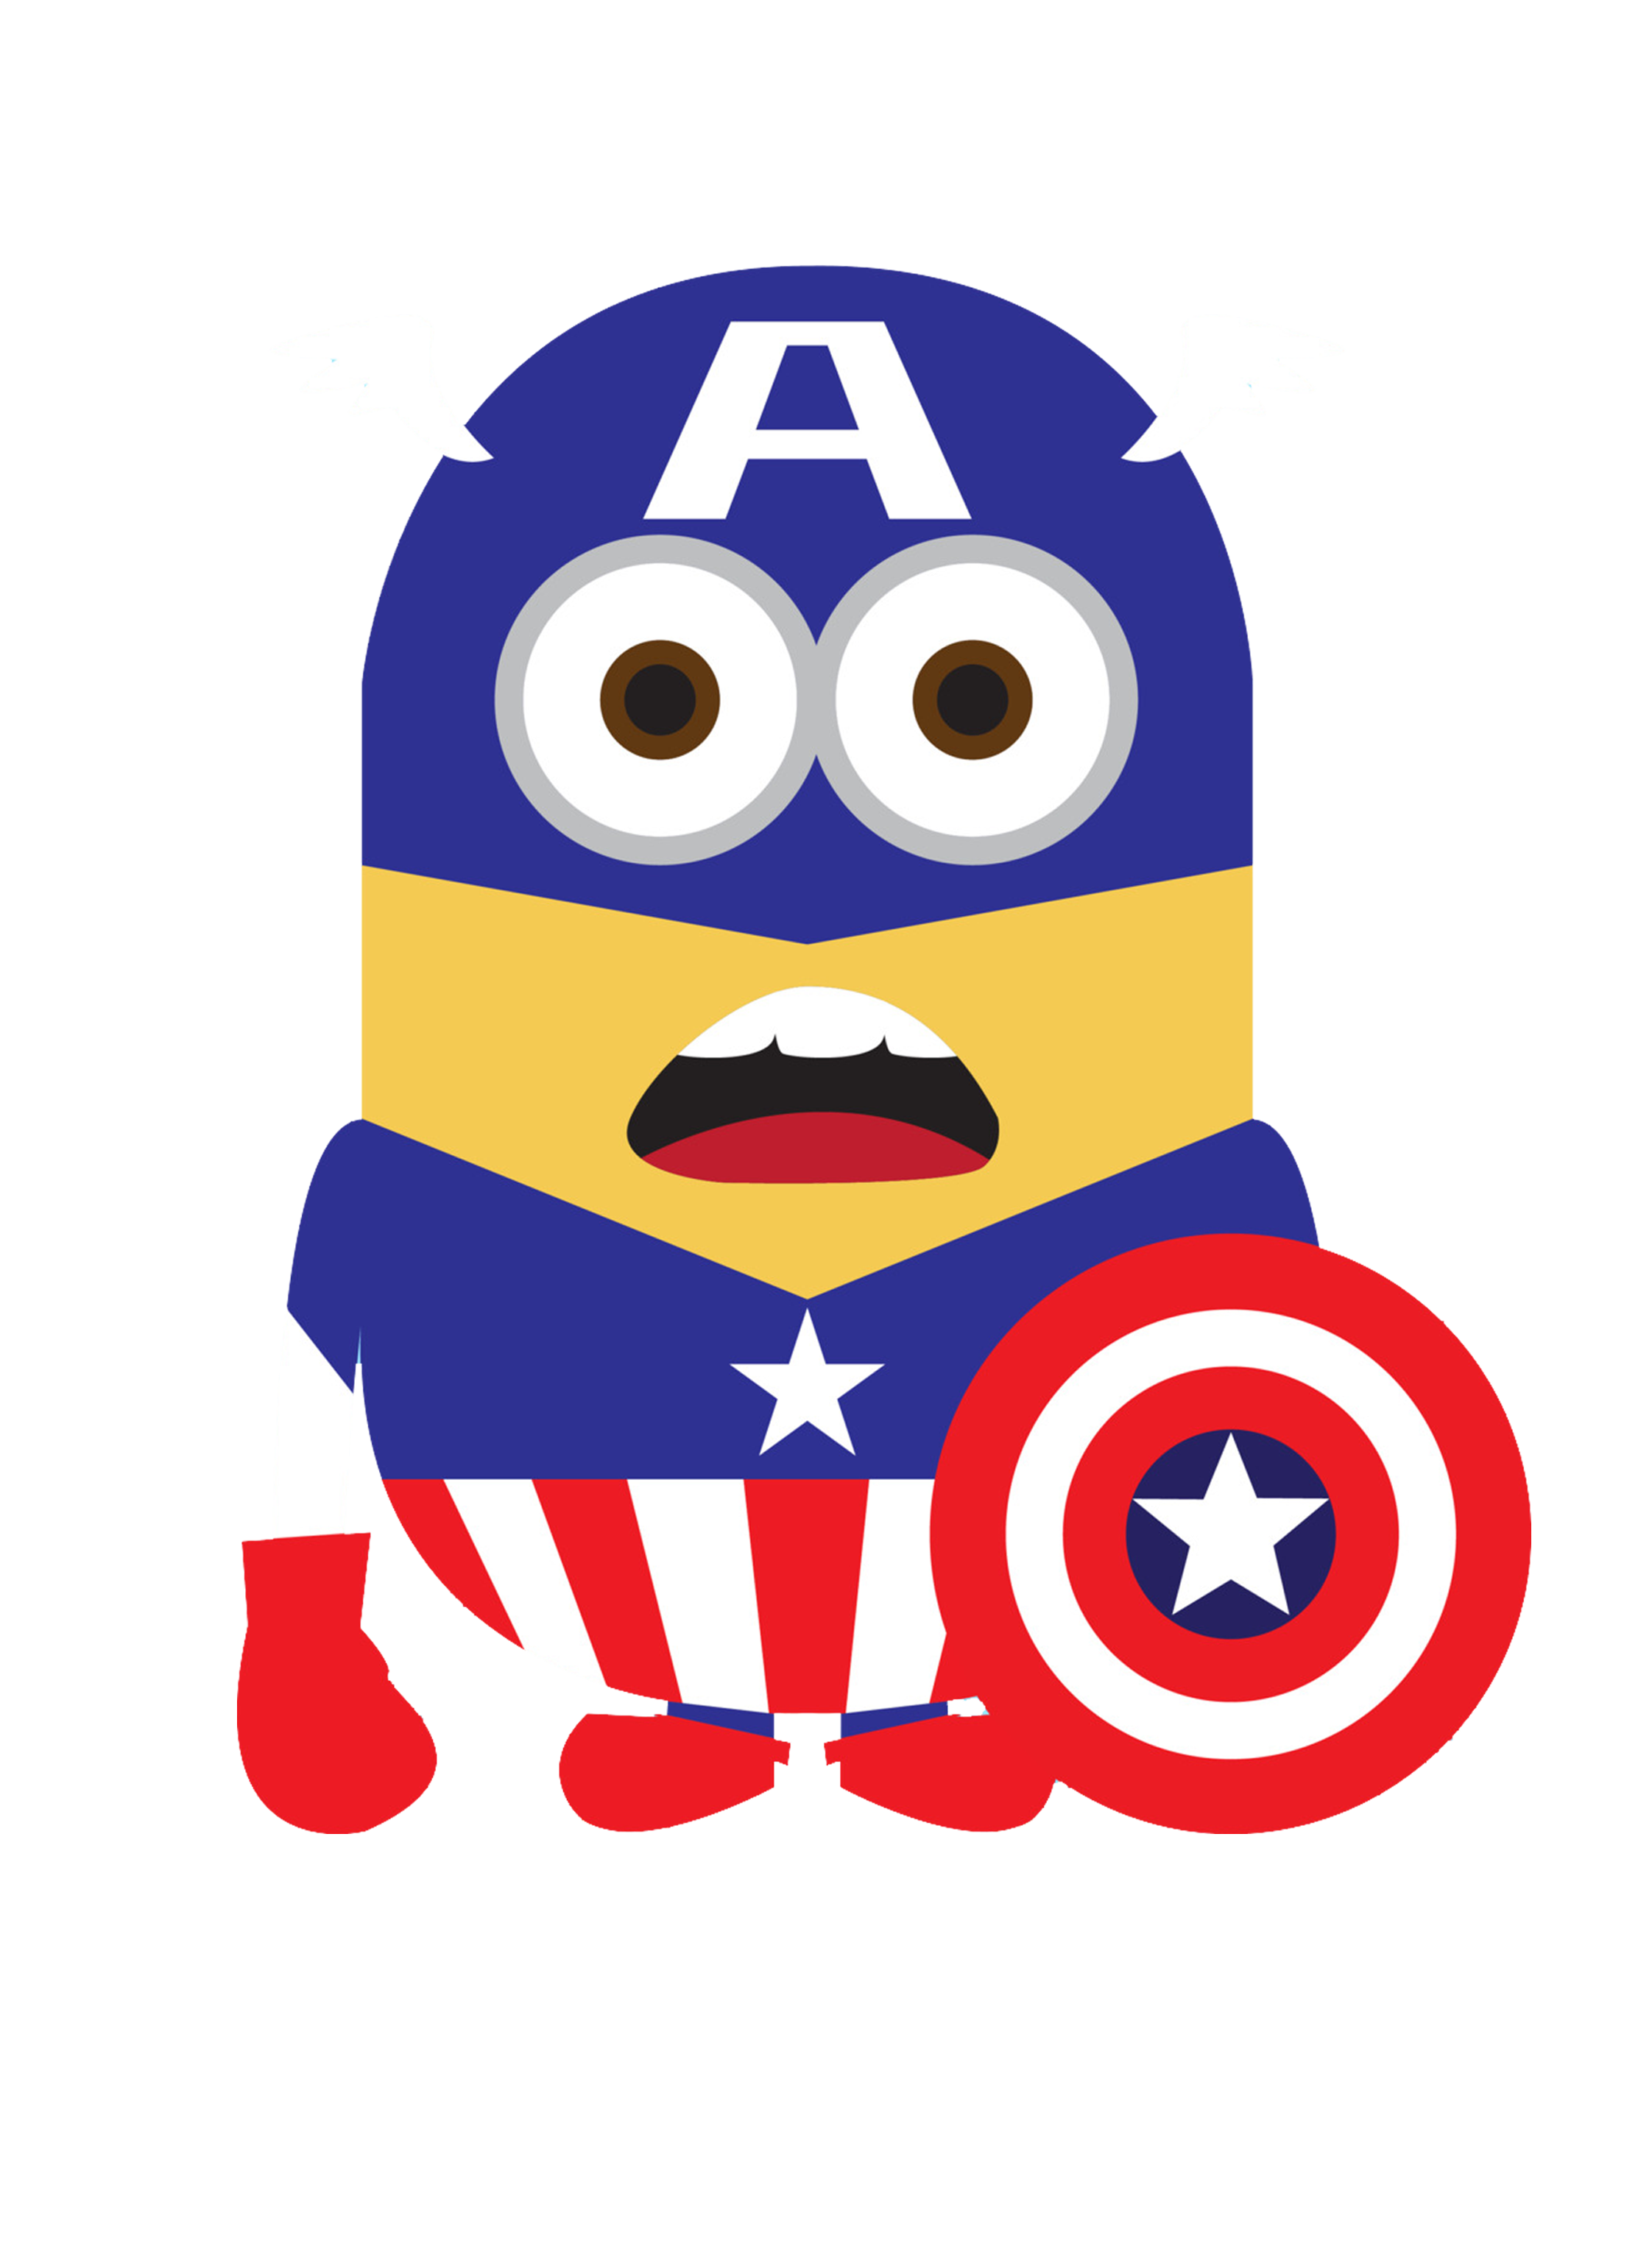 minion clipart captain america